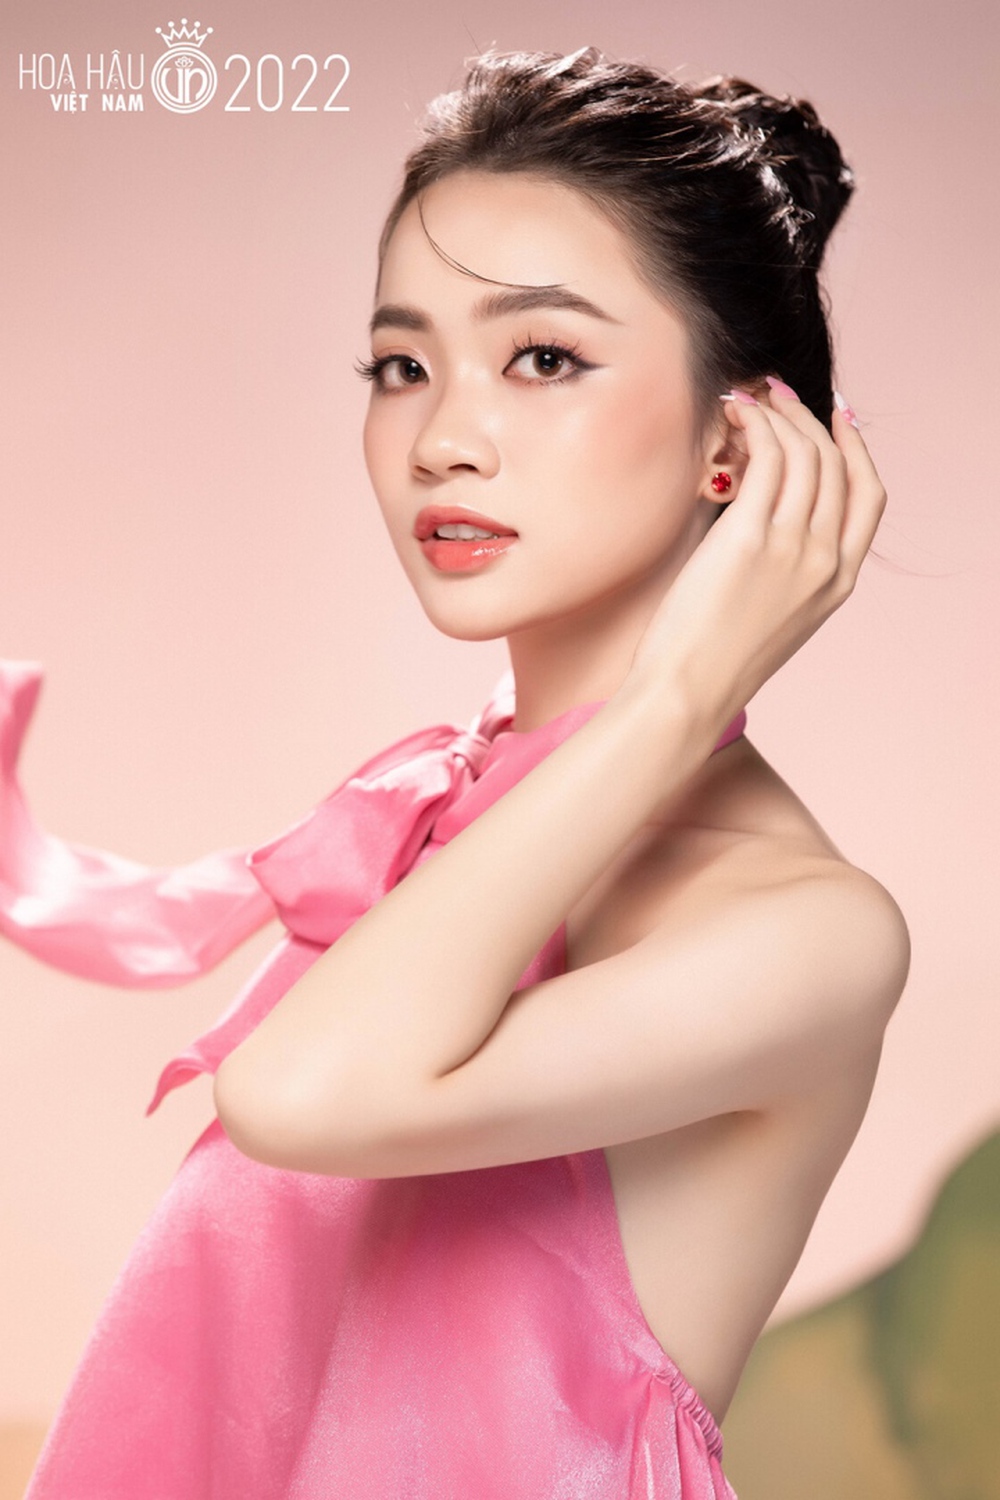 Ảnh chân dung trong veo, ngọt ngào của dàn thí sinh Hoa hậu Việt Nam 2022 - Ảnh 6.